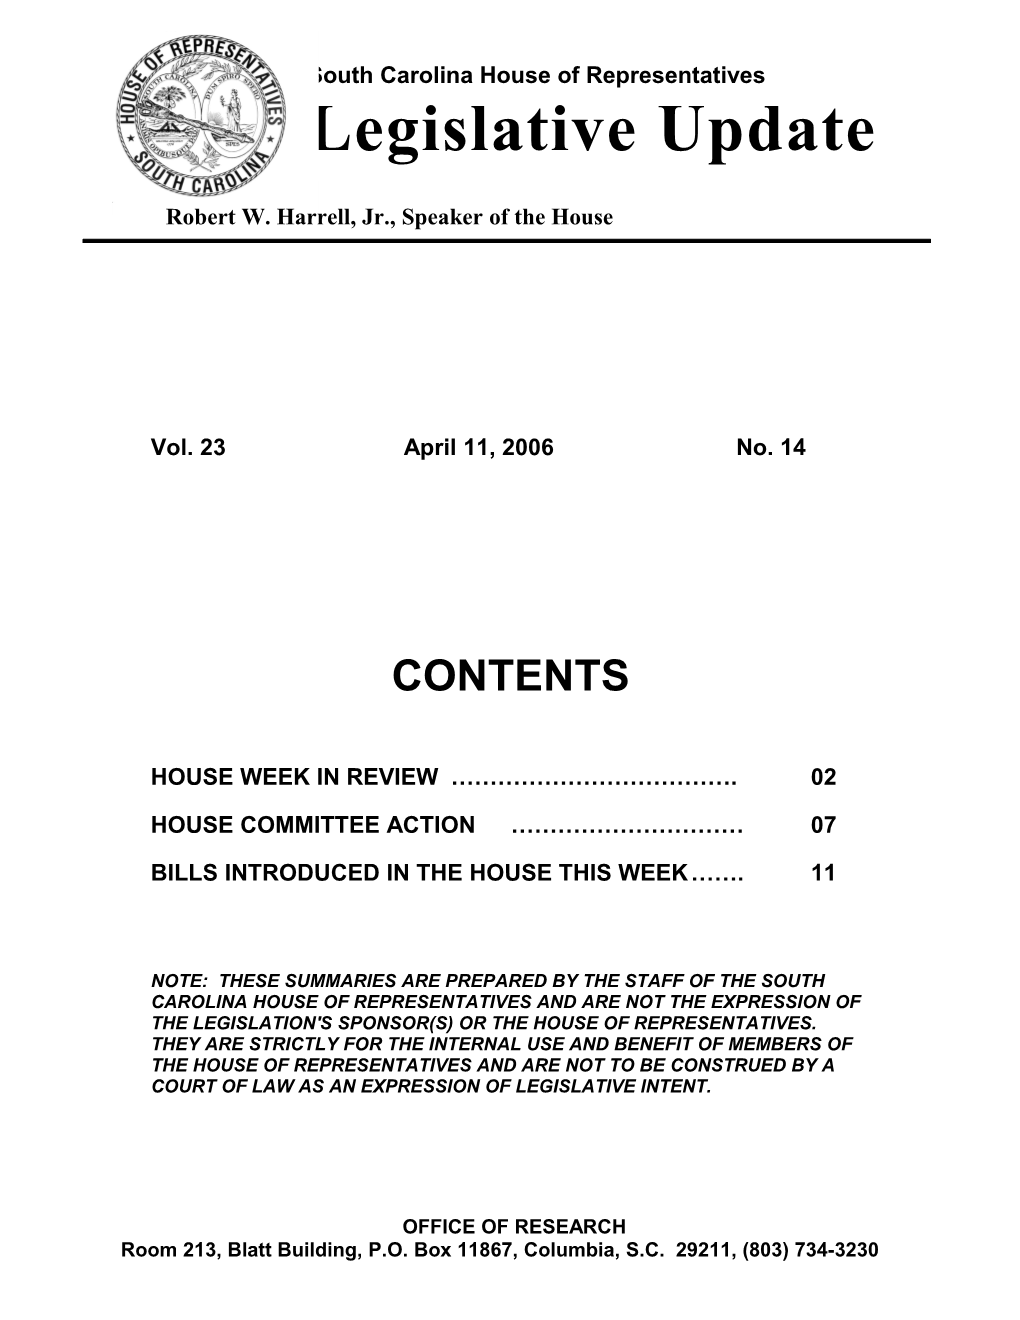 Legislative Update - Vol. 23 No. 14 April 11, 2006 - South Carolina Legislature Online